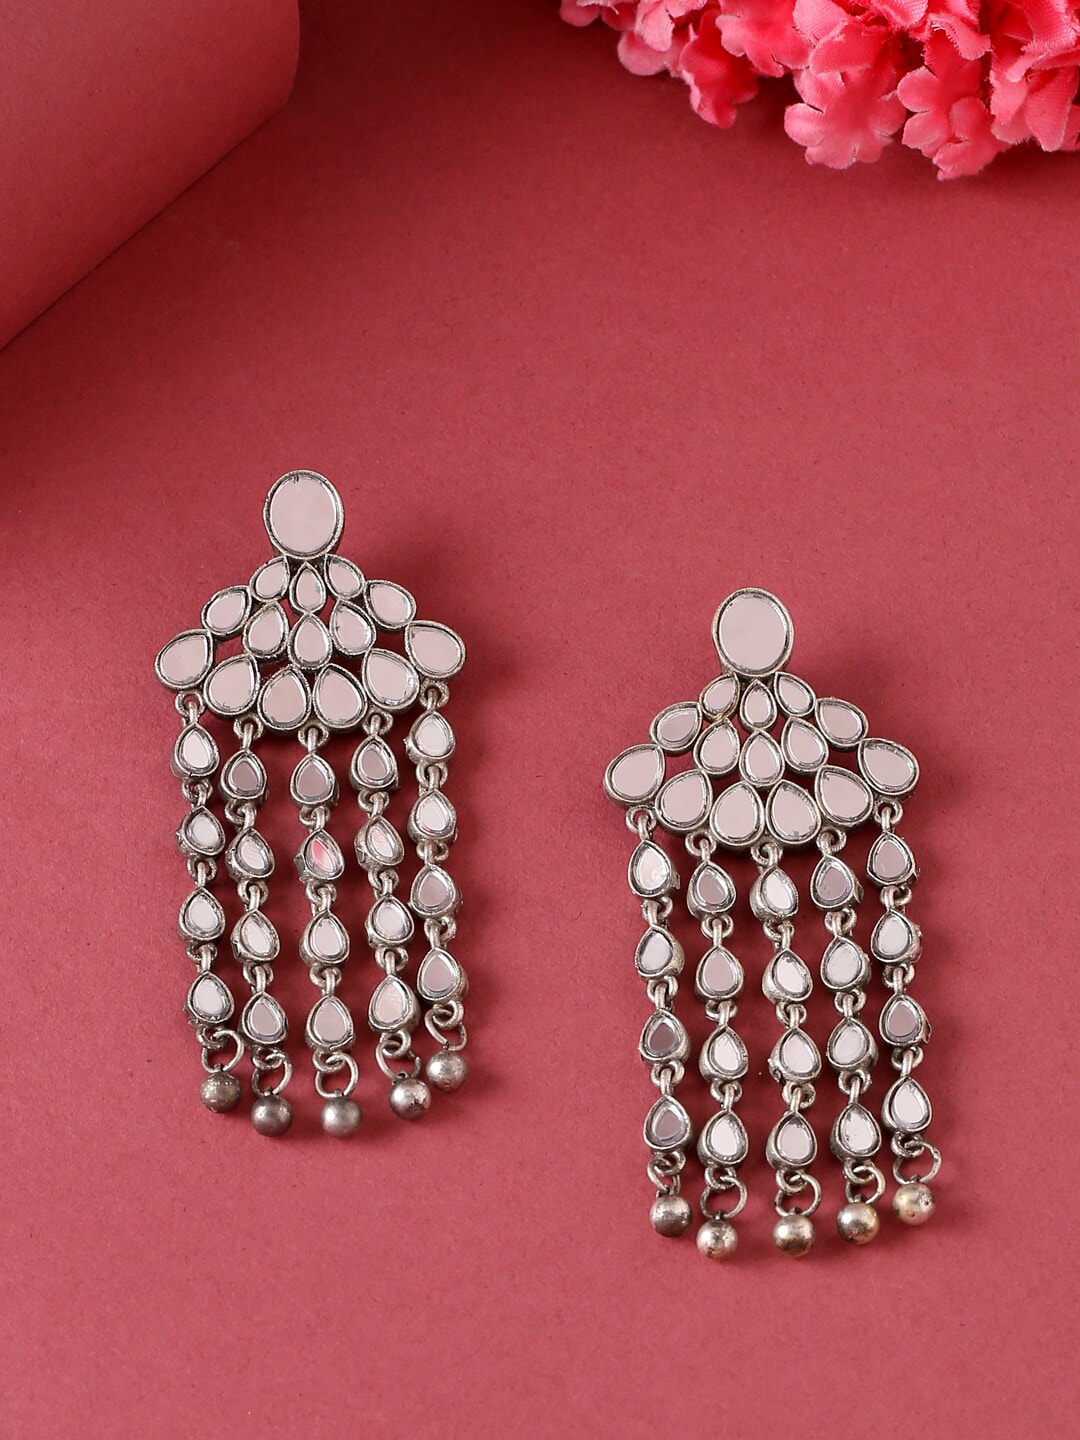 VIRAASI Silver-Toned Oxidised Mirror Work Drop Earrings Price in India